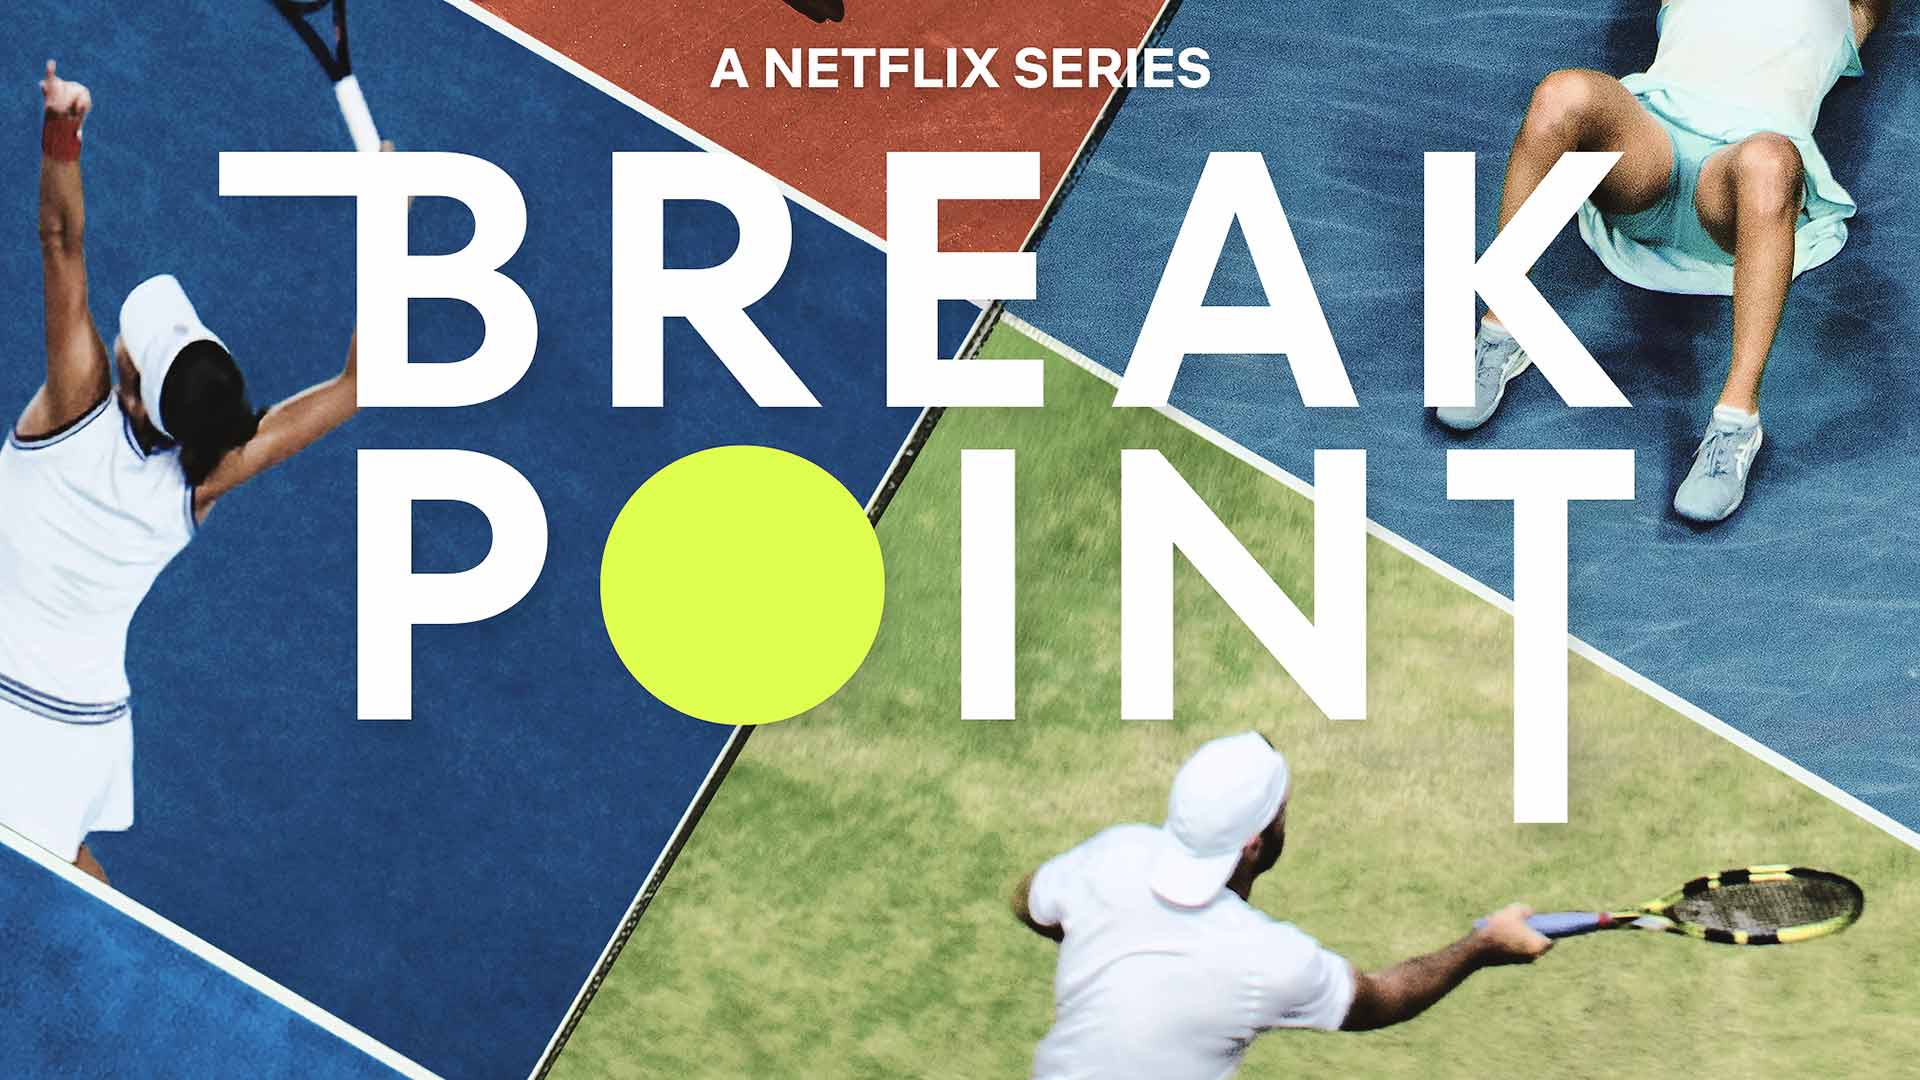 Break Point se estrenará el 13 de enero.